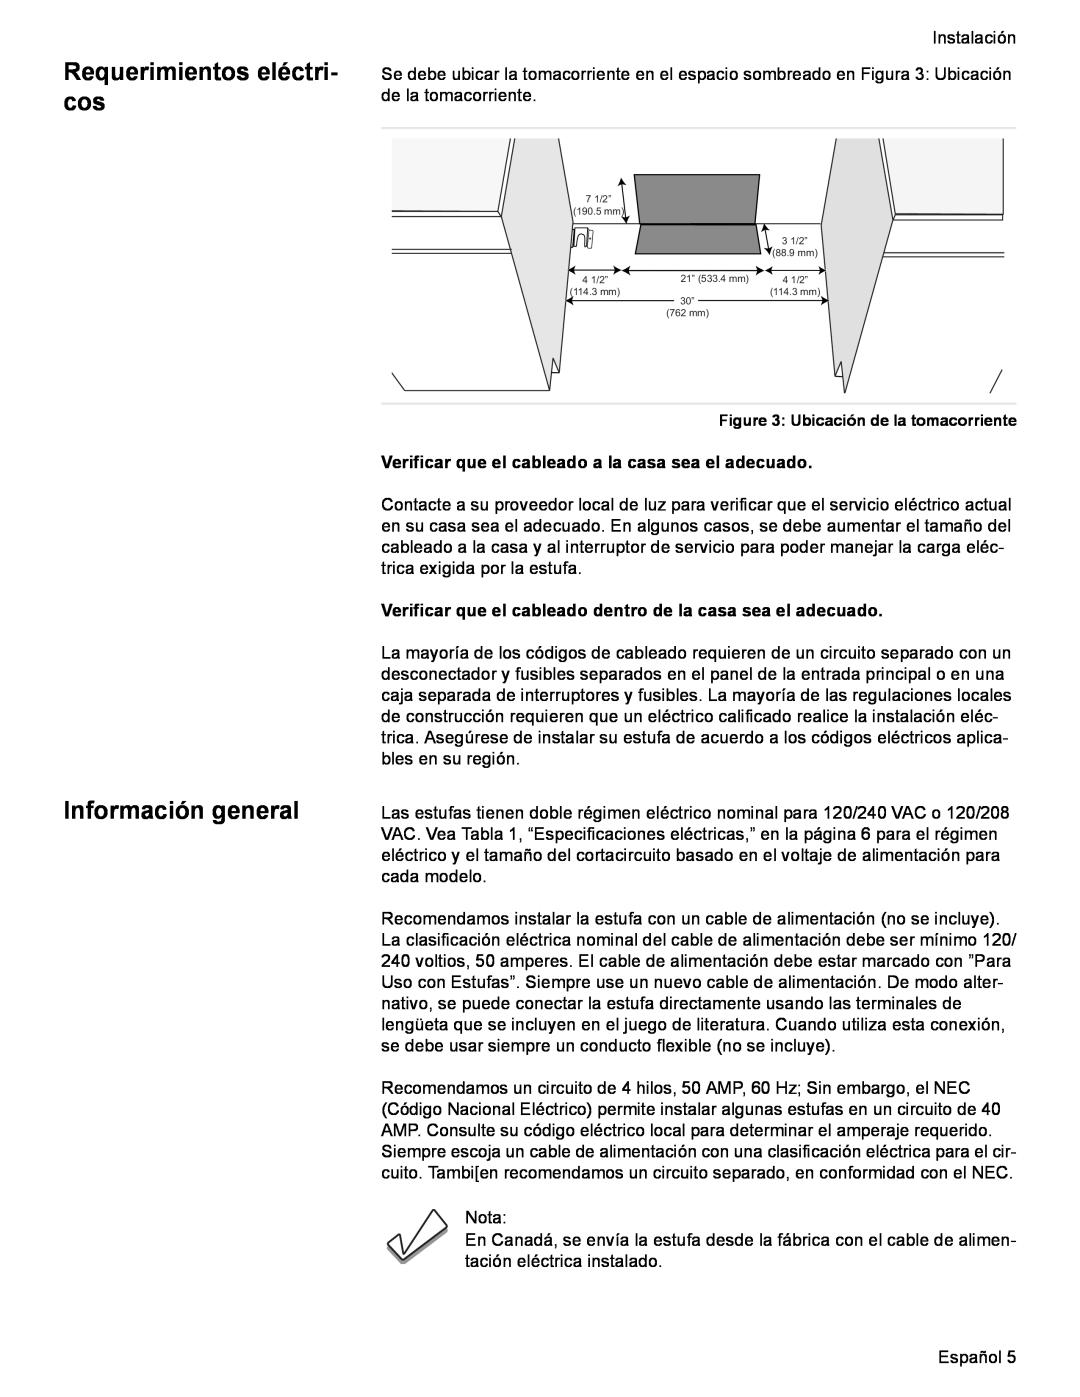 Siemens HE2425(U, C) Requerimientos eléctri- cos, Información general, Verificar que el cableado a la casa sea el adecuado 